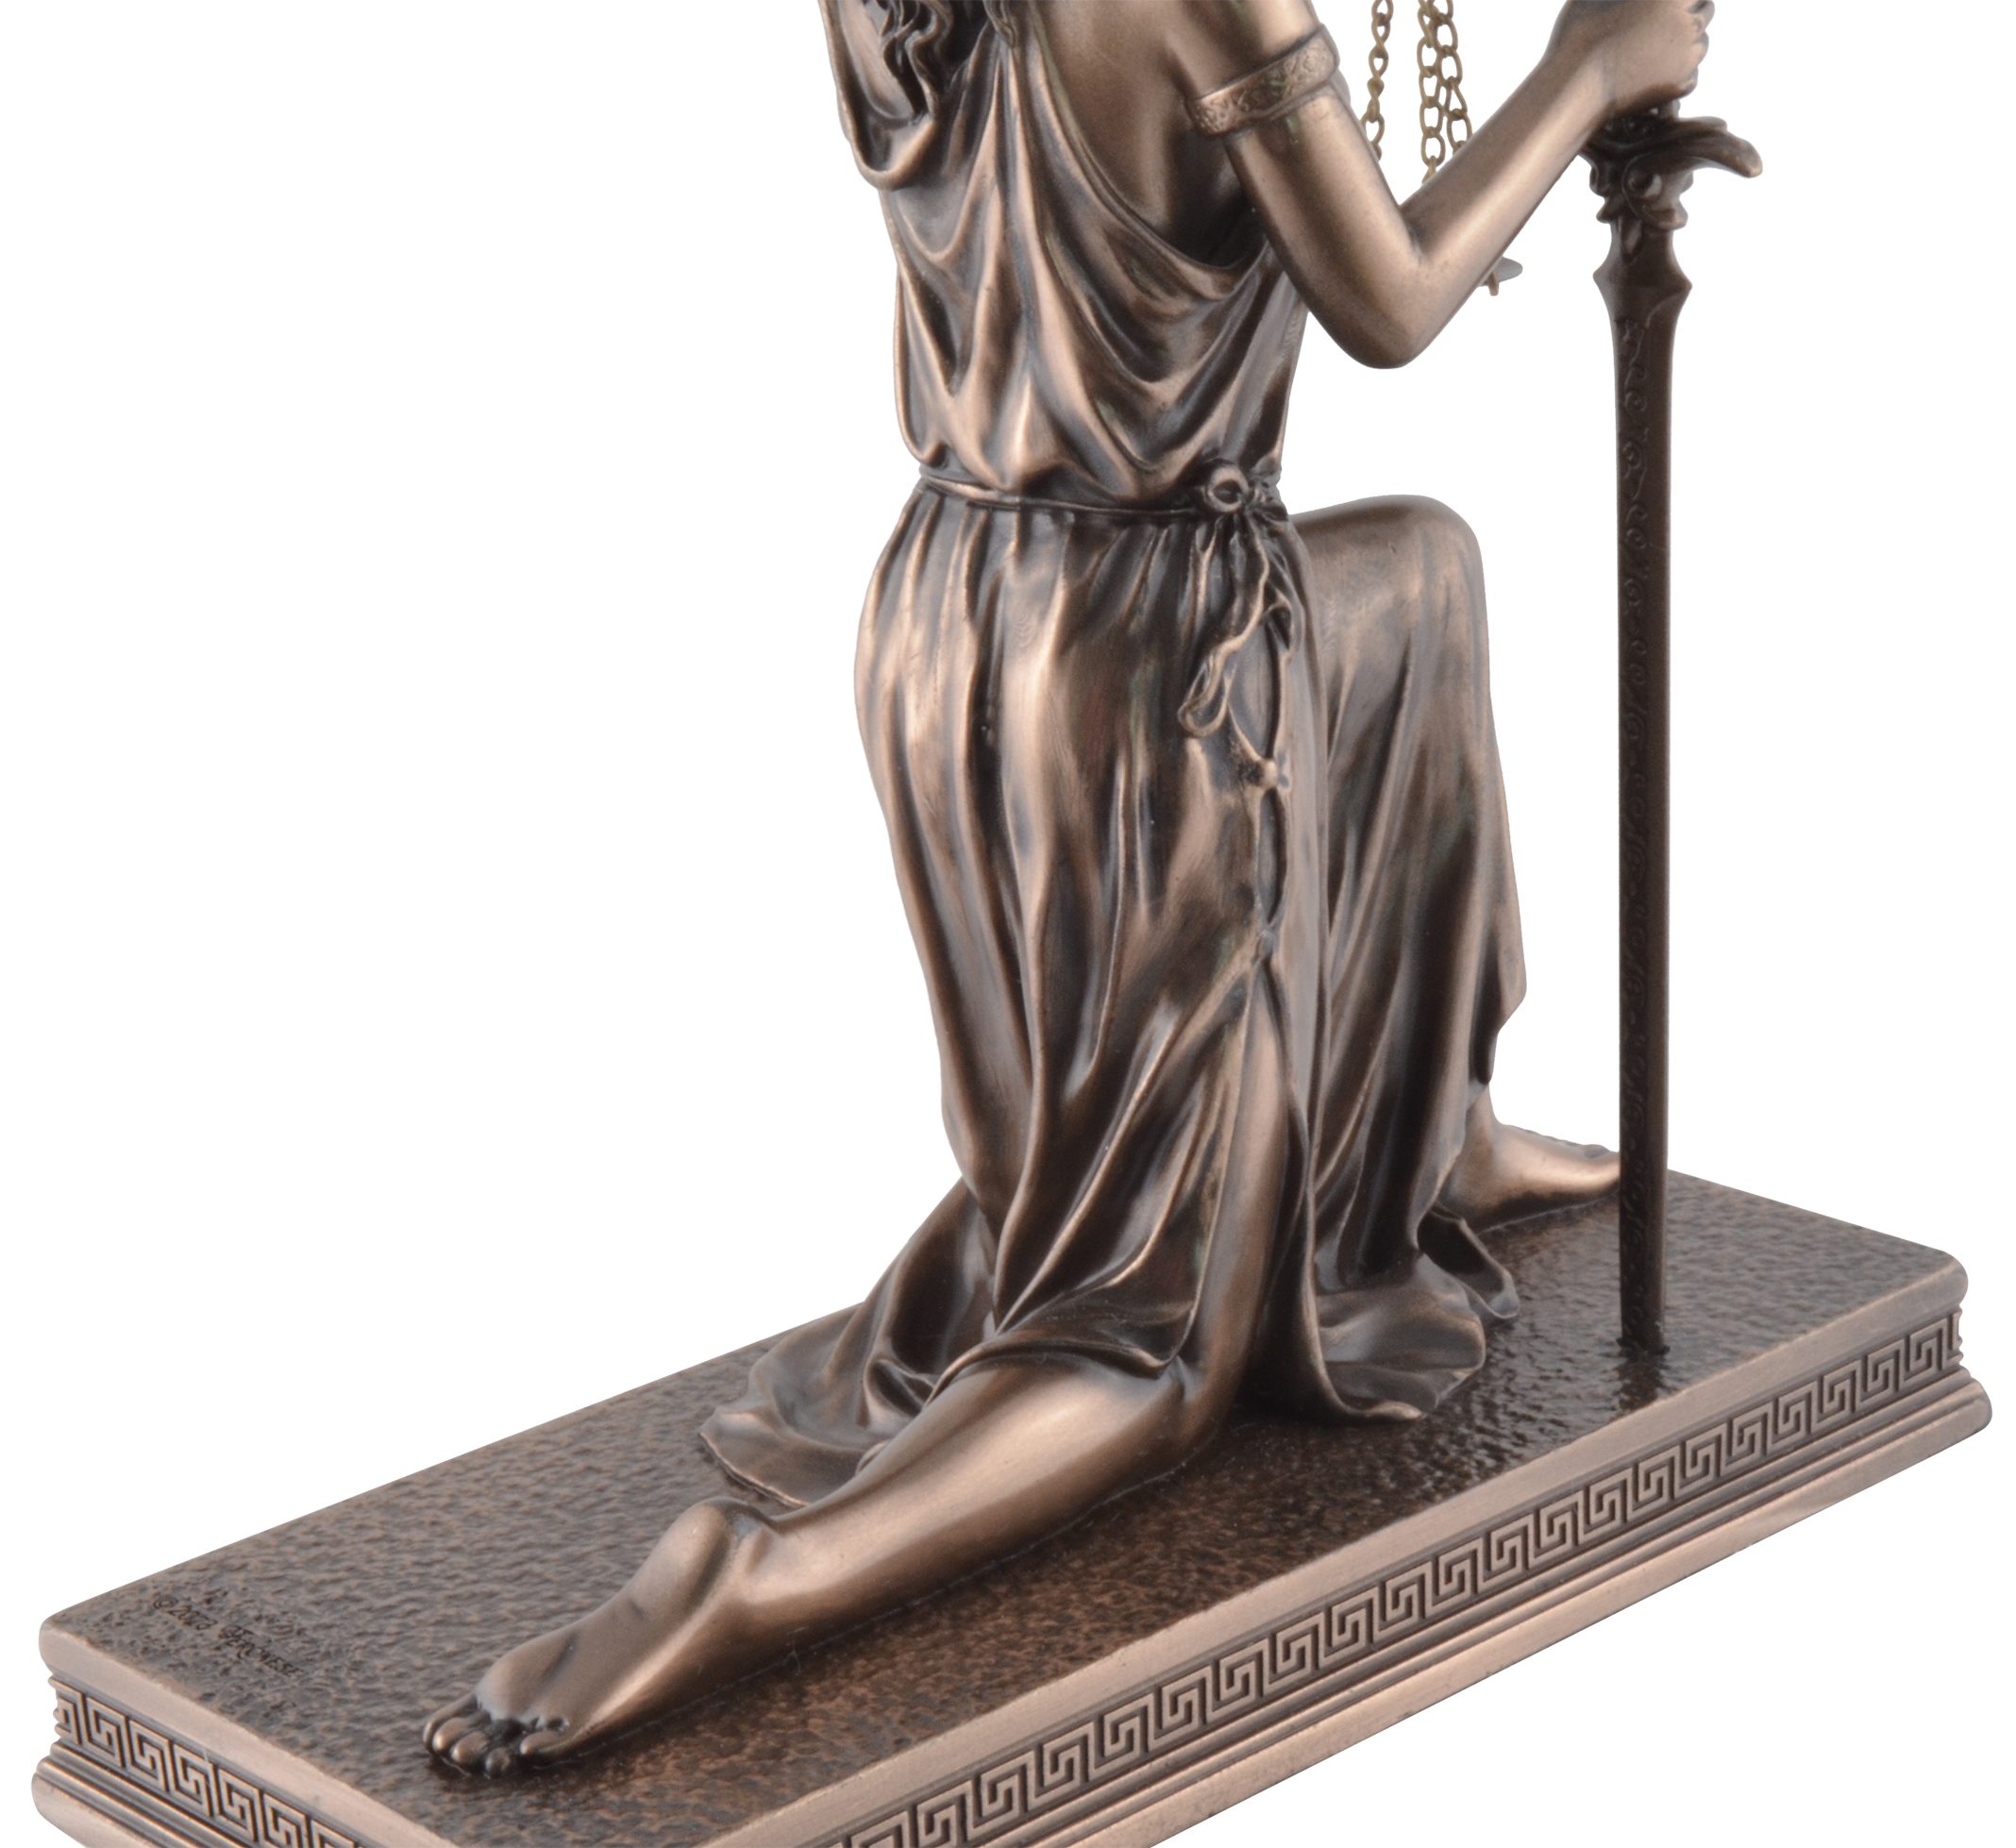 Größe: Justitia Kunststein, Knieende coloriert, 8x13x17 cm Dekofigur Gmbh L/B/H von bronziert, ca. Vogler Veronese, direct